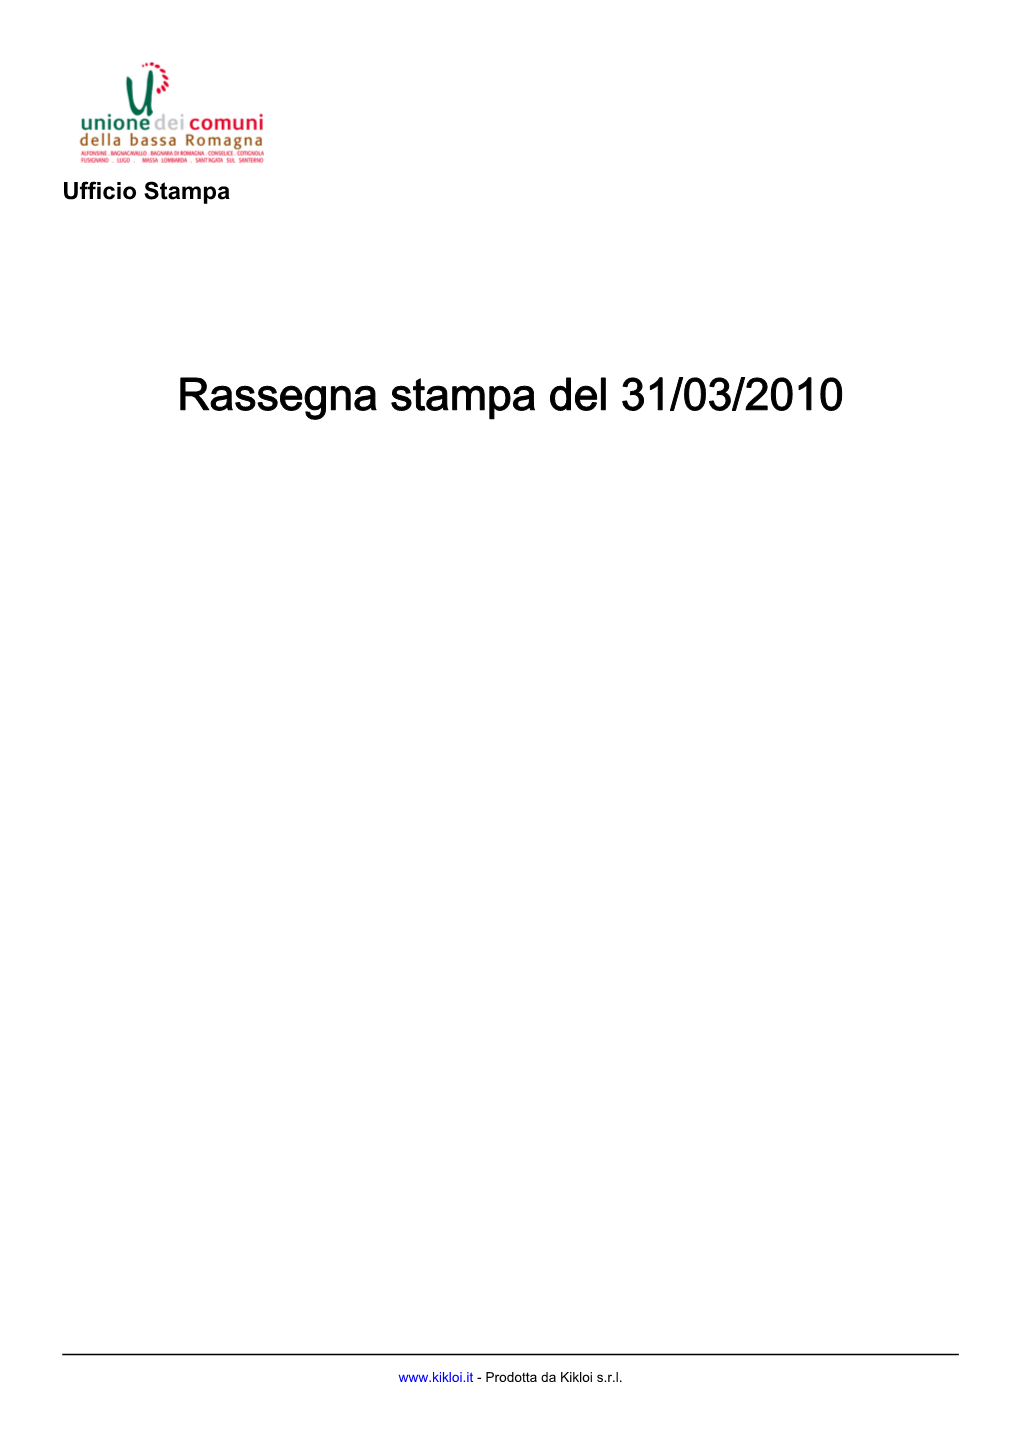 Rassegna Stampa Del 20100331